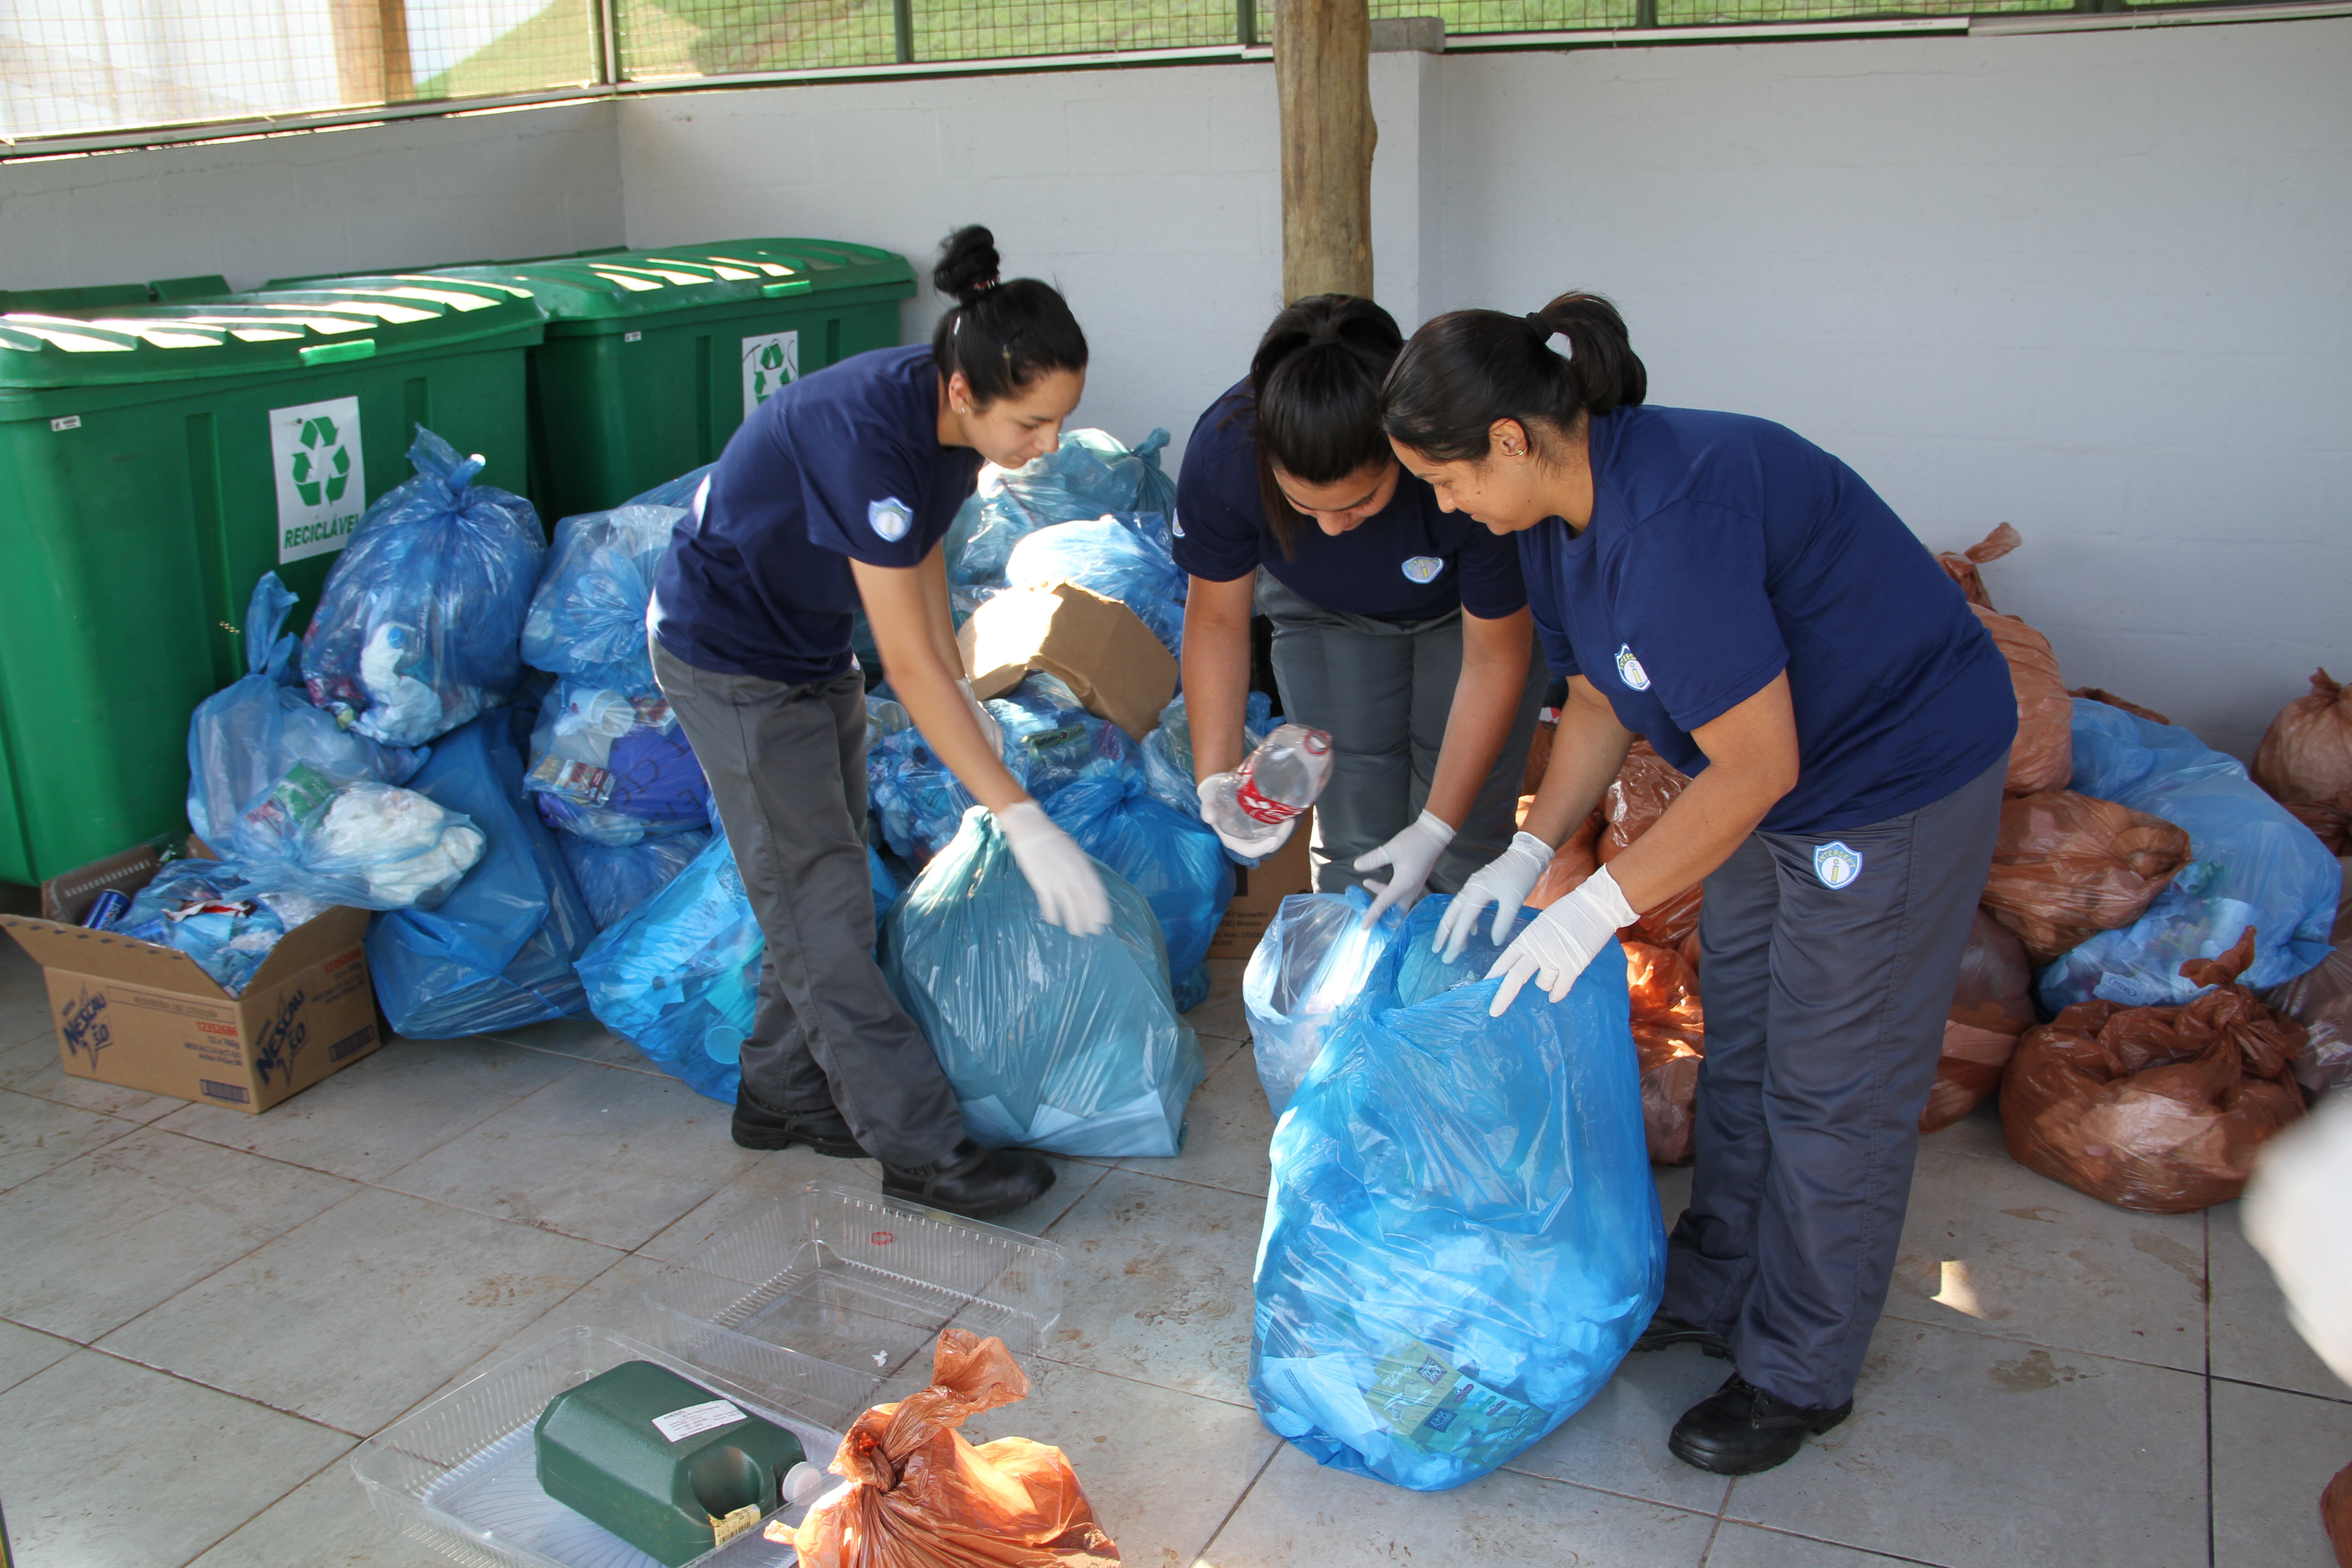 Na frente de muitos sacos de lixo cheios, três mulheres fazem a separação do lixo de um dos sacos